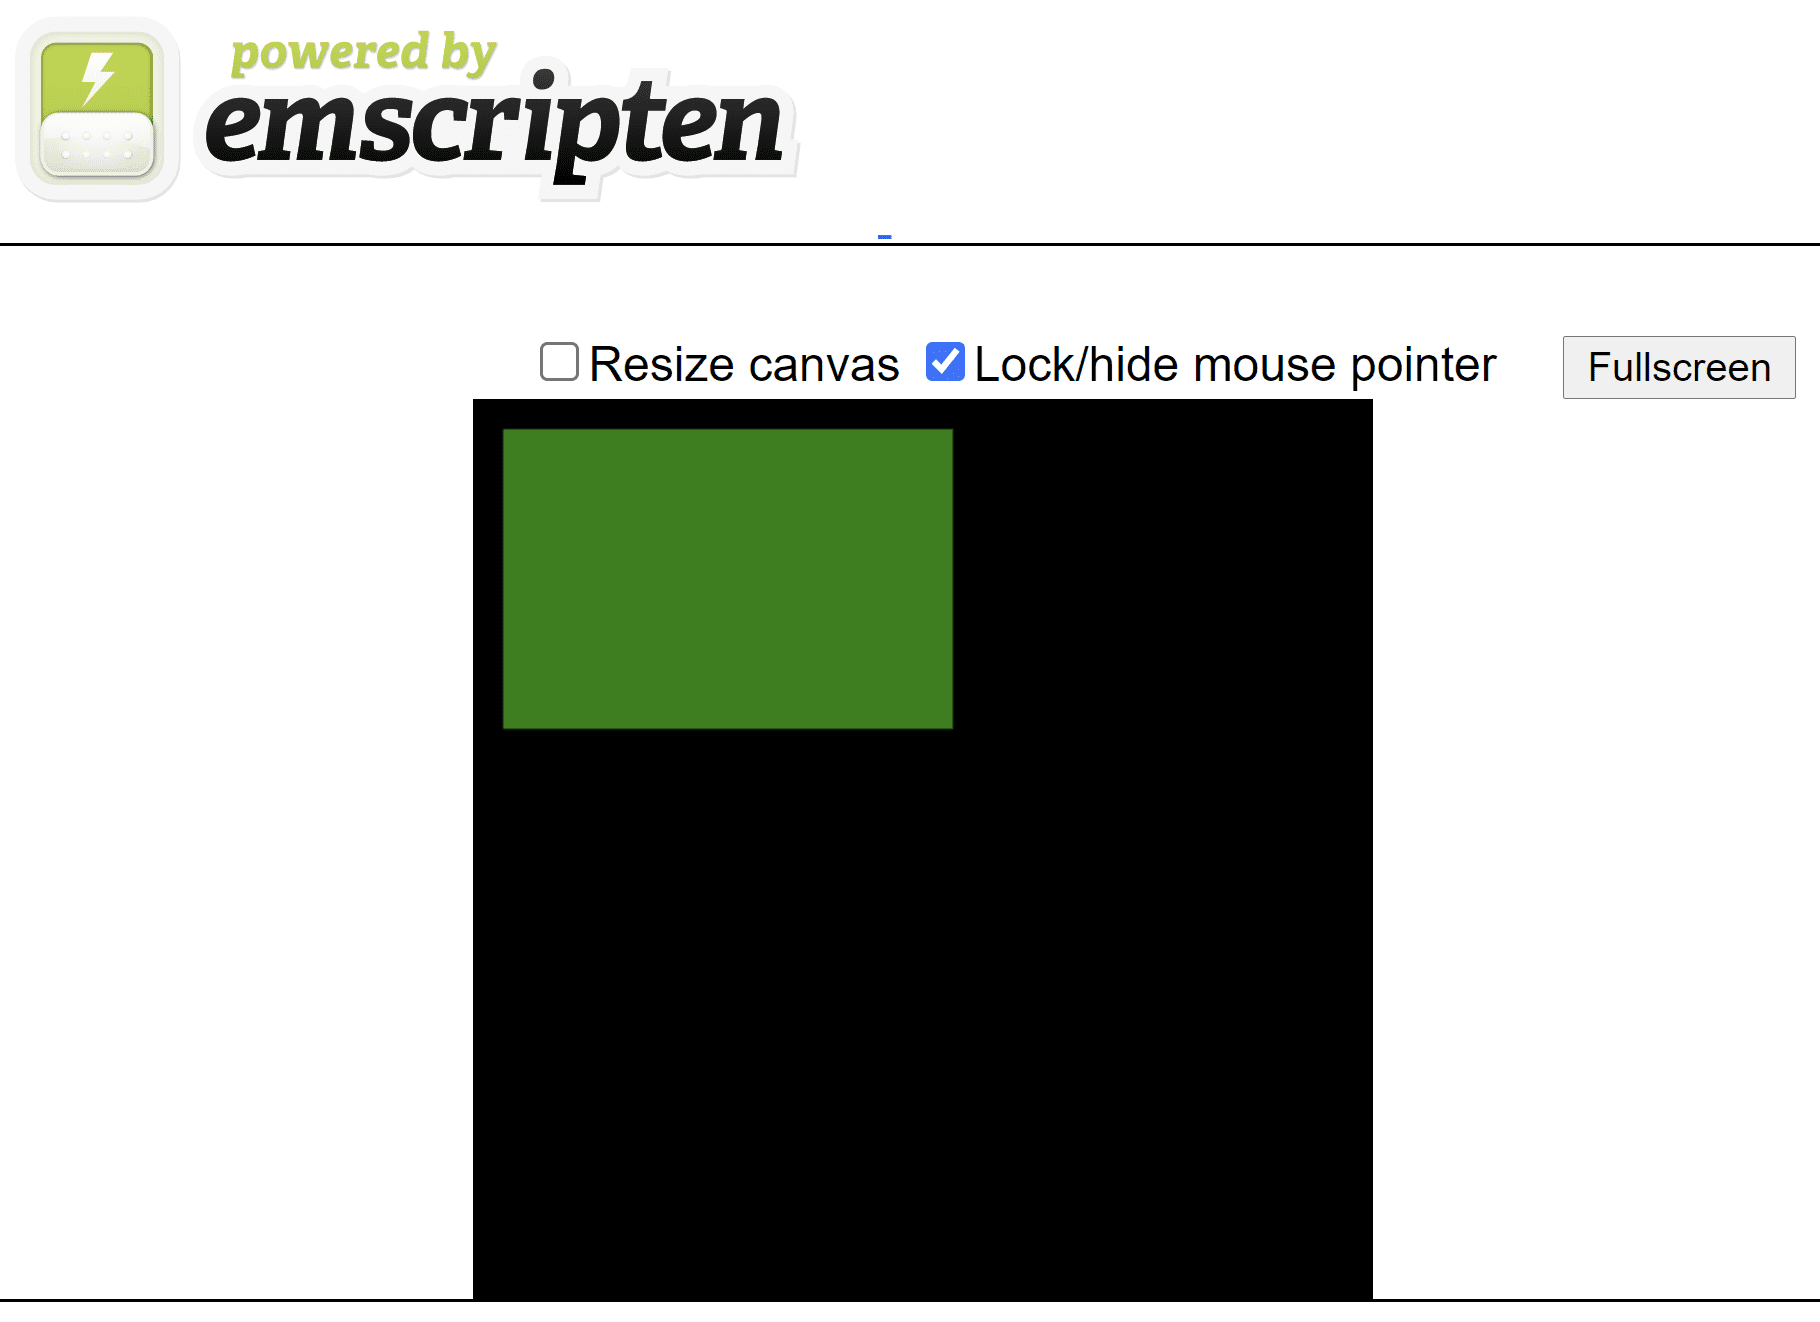 Pagina HTML generata da Emscripten che mostra un rettangolo verde su una tela quadrata nera.